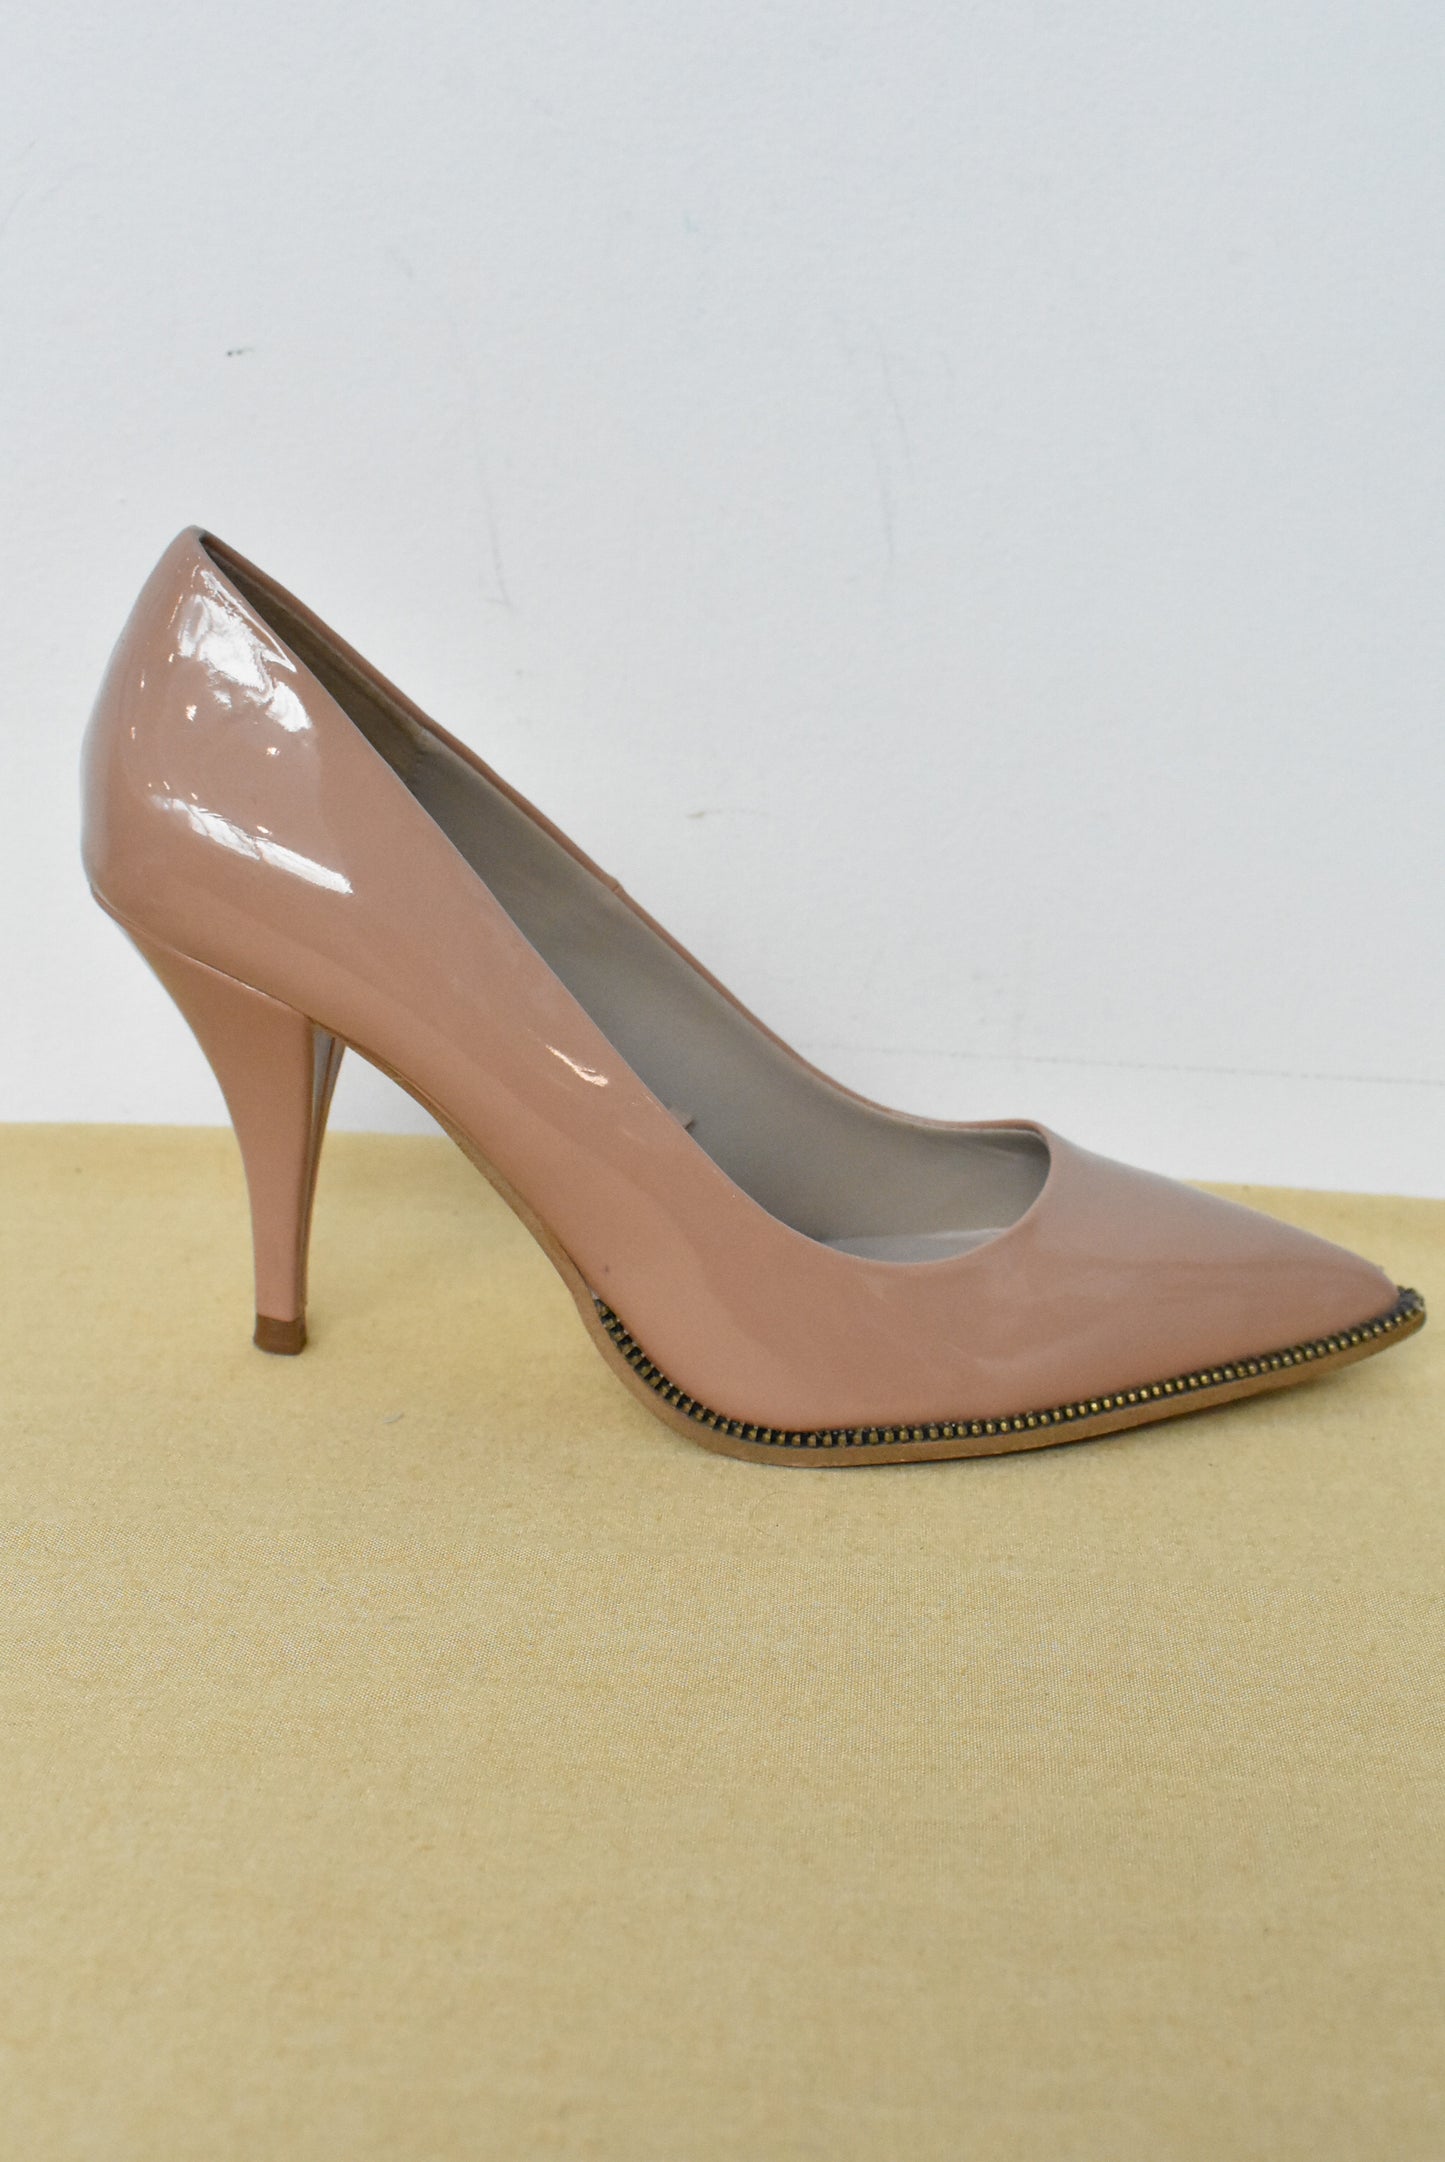 Zara pink nude heels, 38